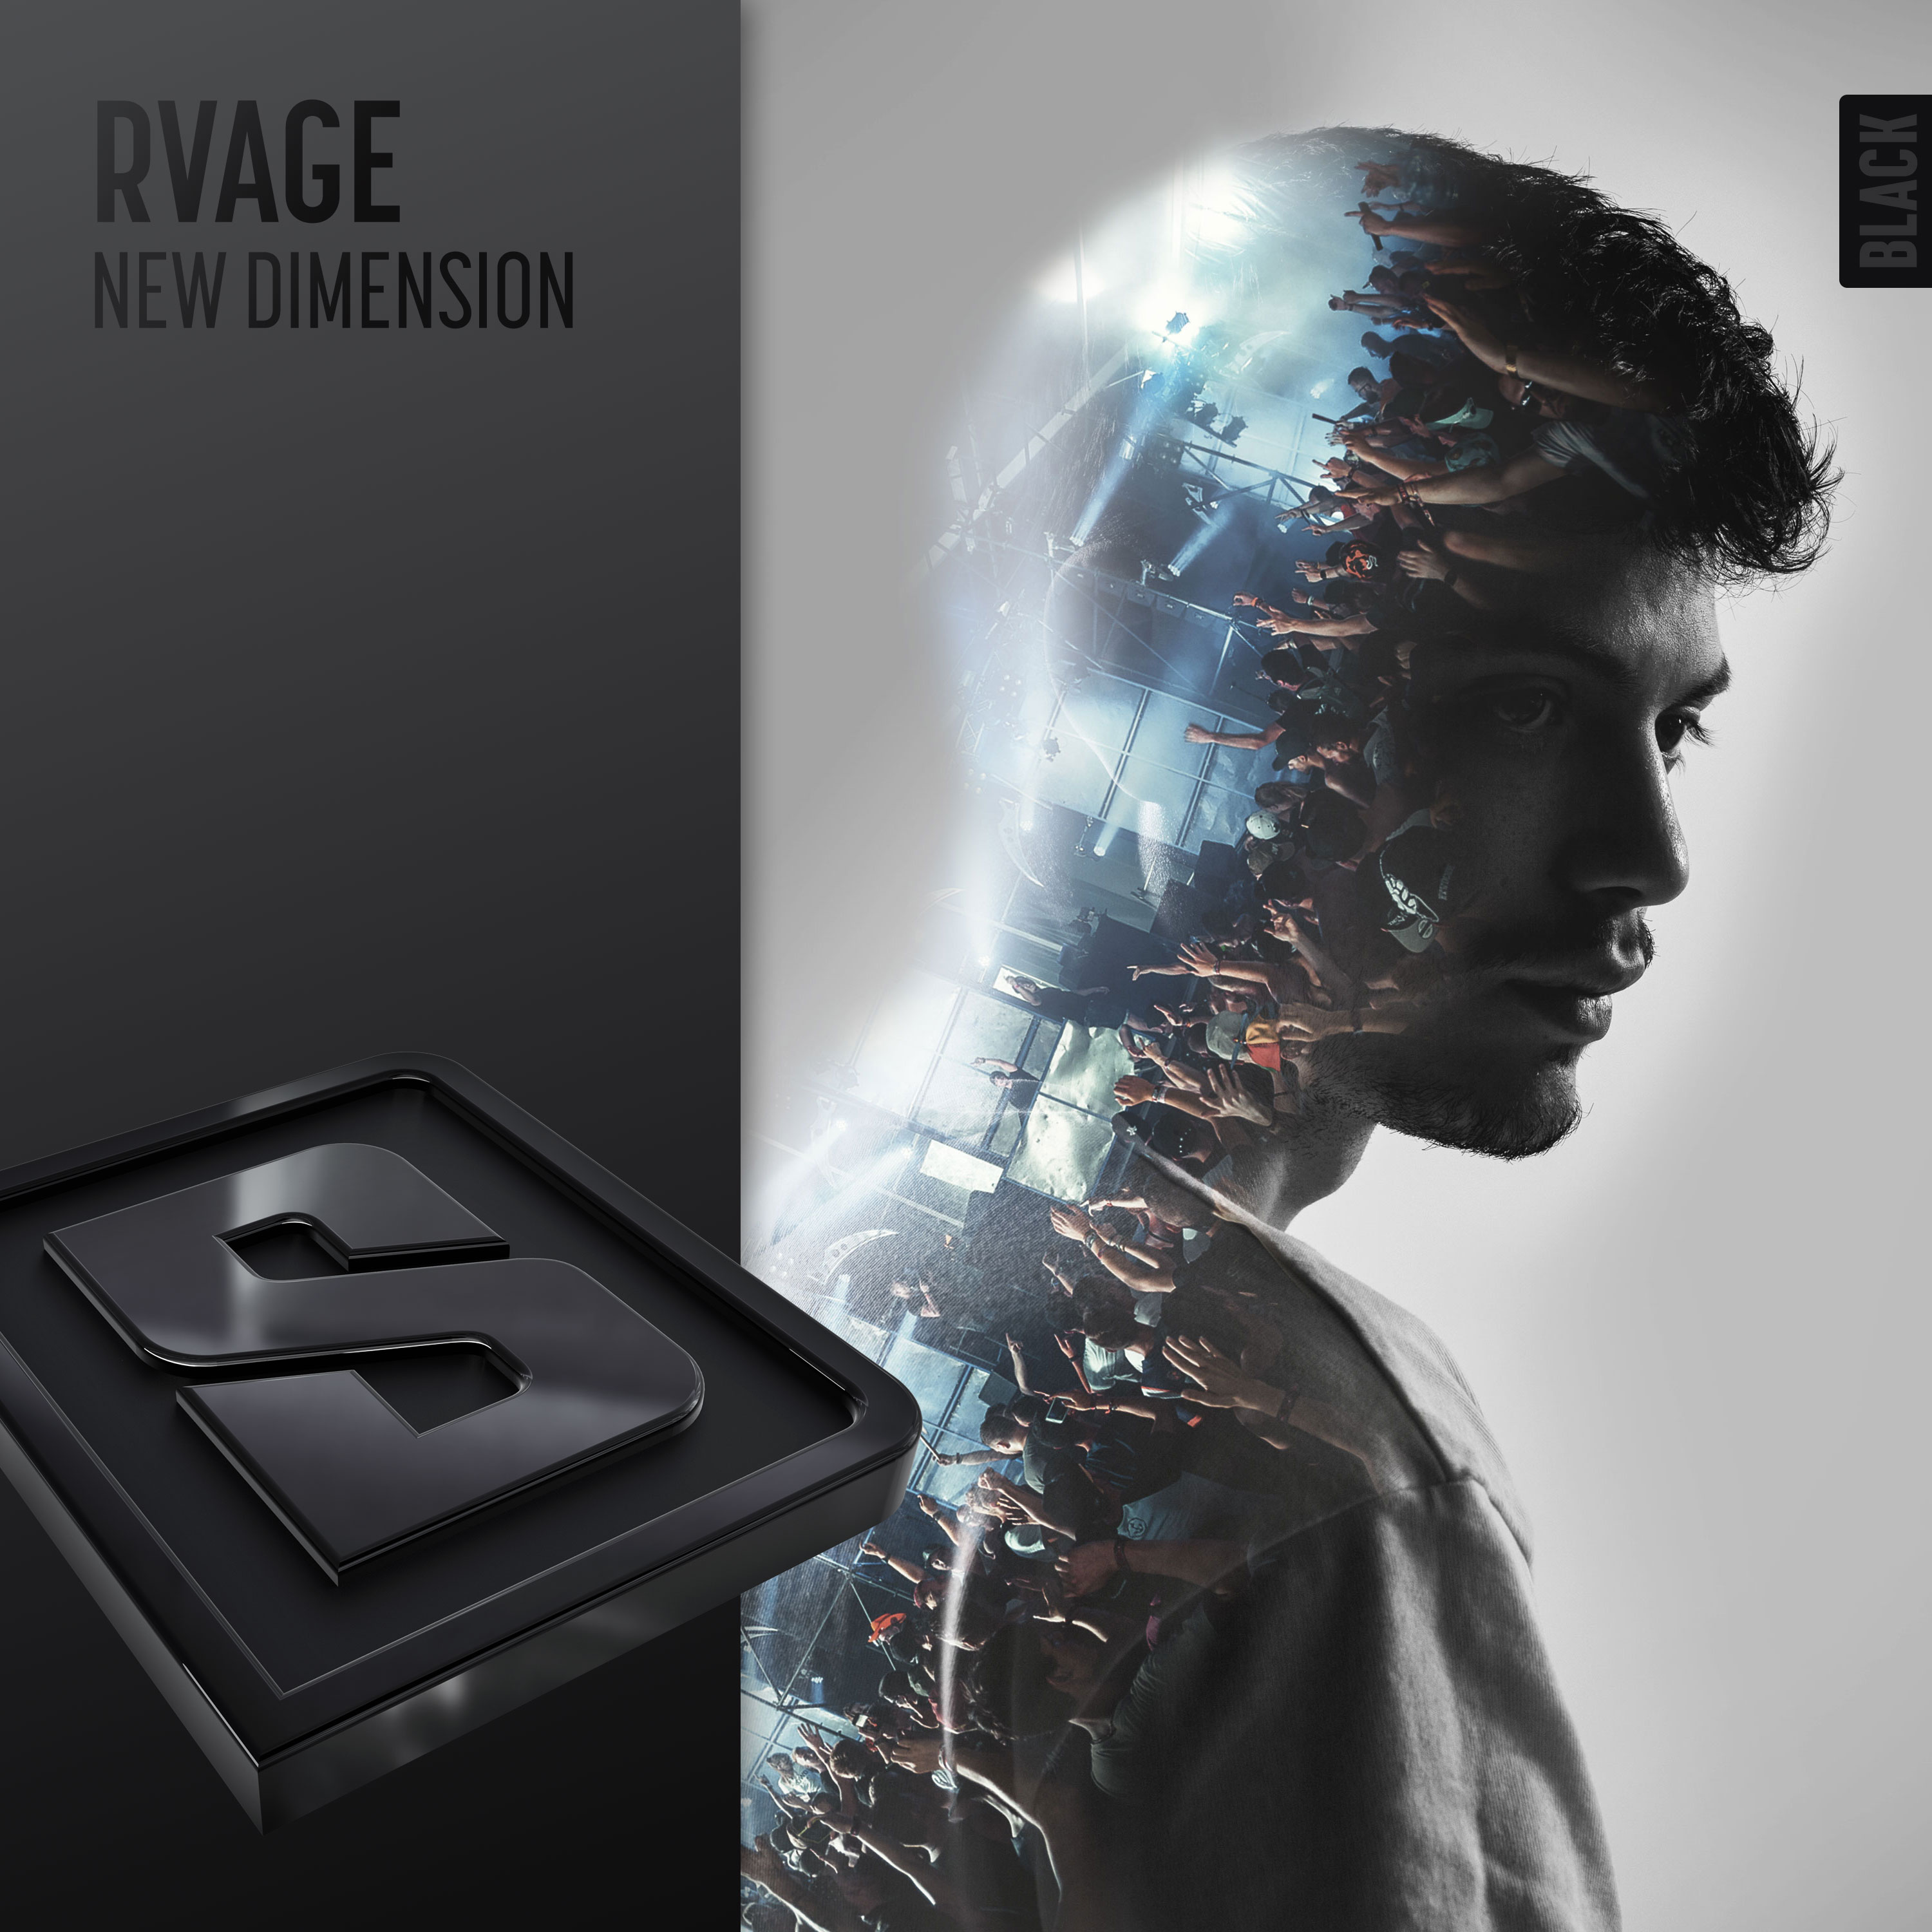 New Dimension/RVAGE